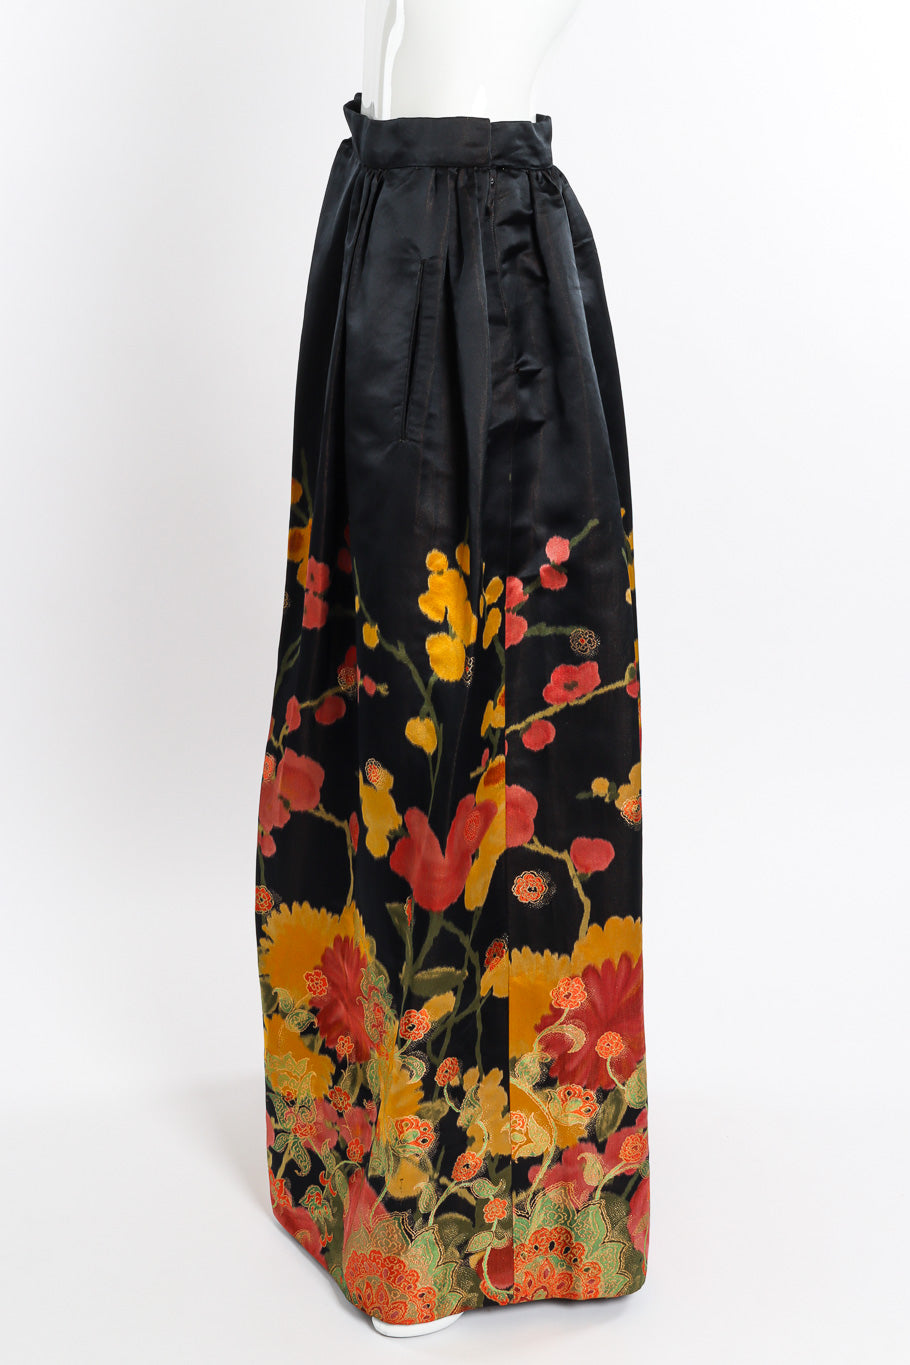 Vintage I.Magnin Floral Brocade Ball Skirt side on mannequin @recessla